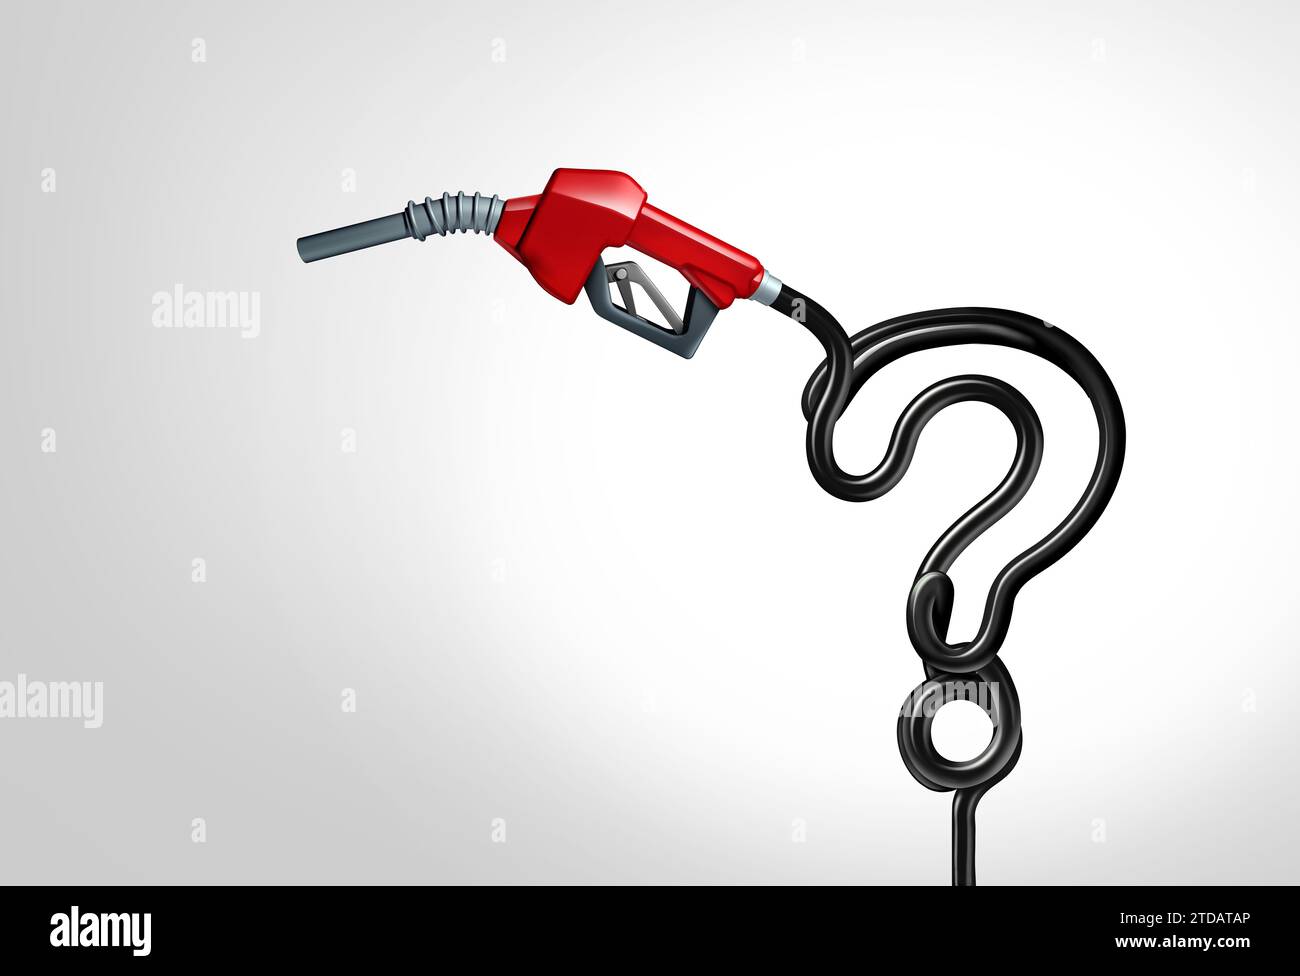 Gasfragen und Benzinkonzept als fossile Brennstoffe vergasende Pumpenfrage, die Transportentscheidungen mit steigendem oder fallendem Anstieg darstellt Stockfoto